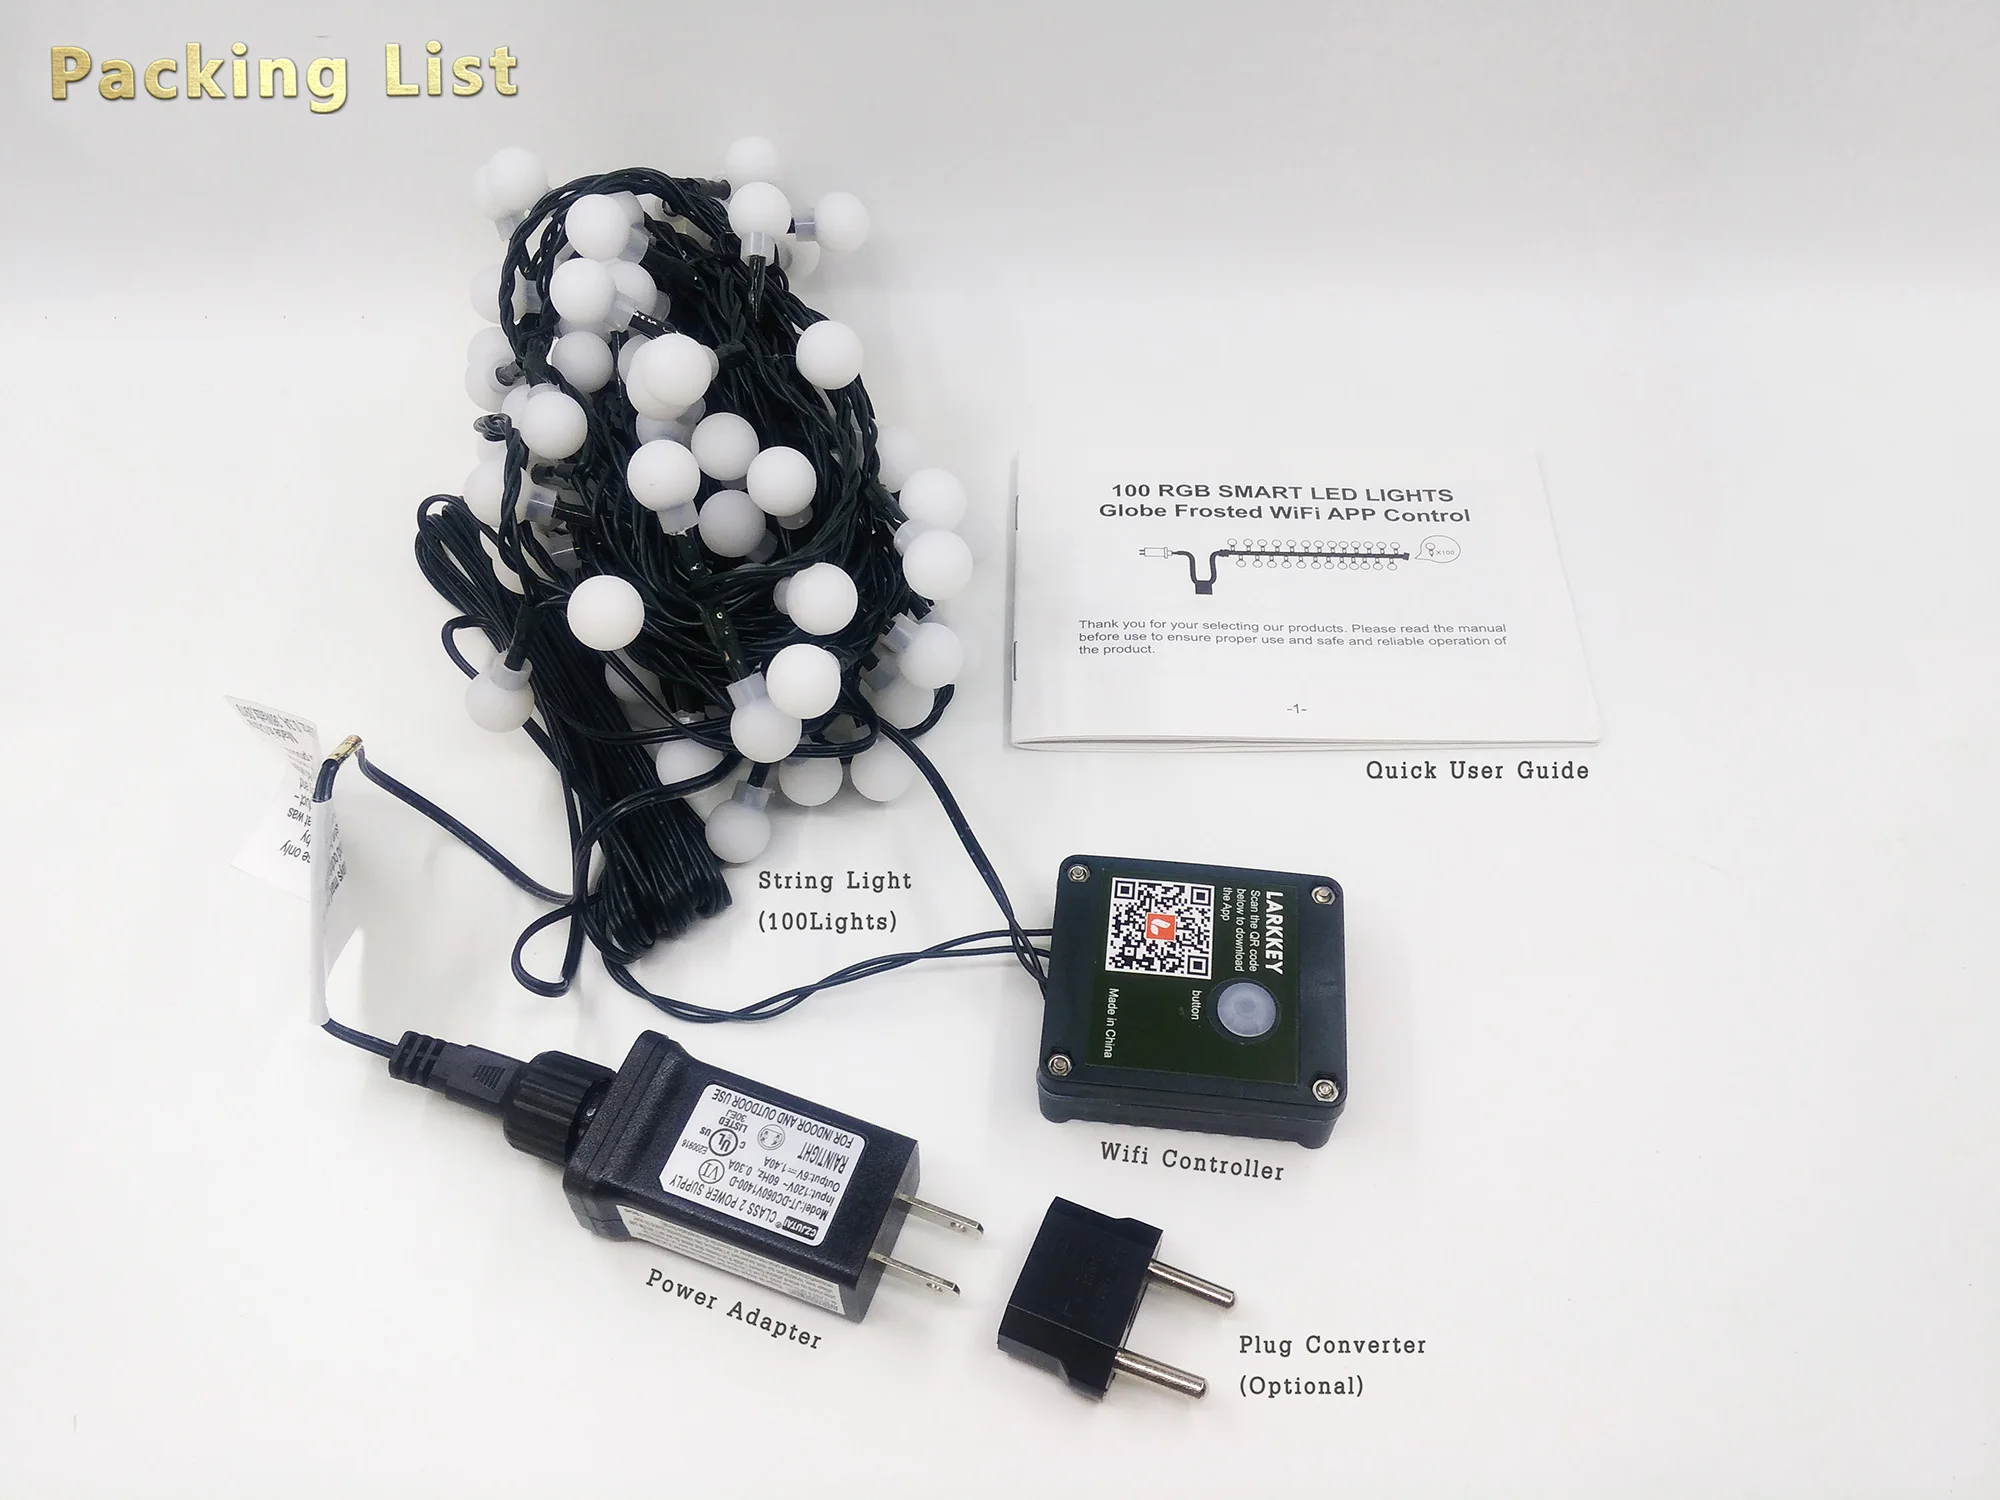 Smart9 струнный светильник на Рождество, умный RGB светодиодный 100 светильник s Wi-Fi подключение, Smart Life APP дистанционное управление, питание от TuYa